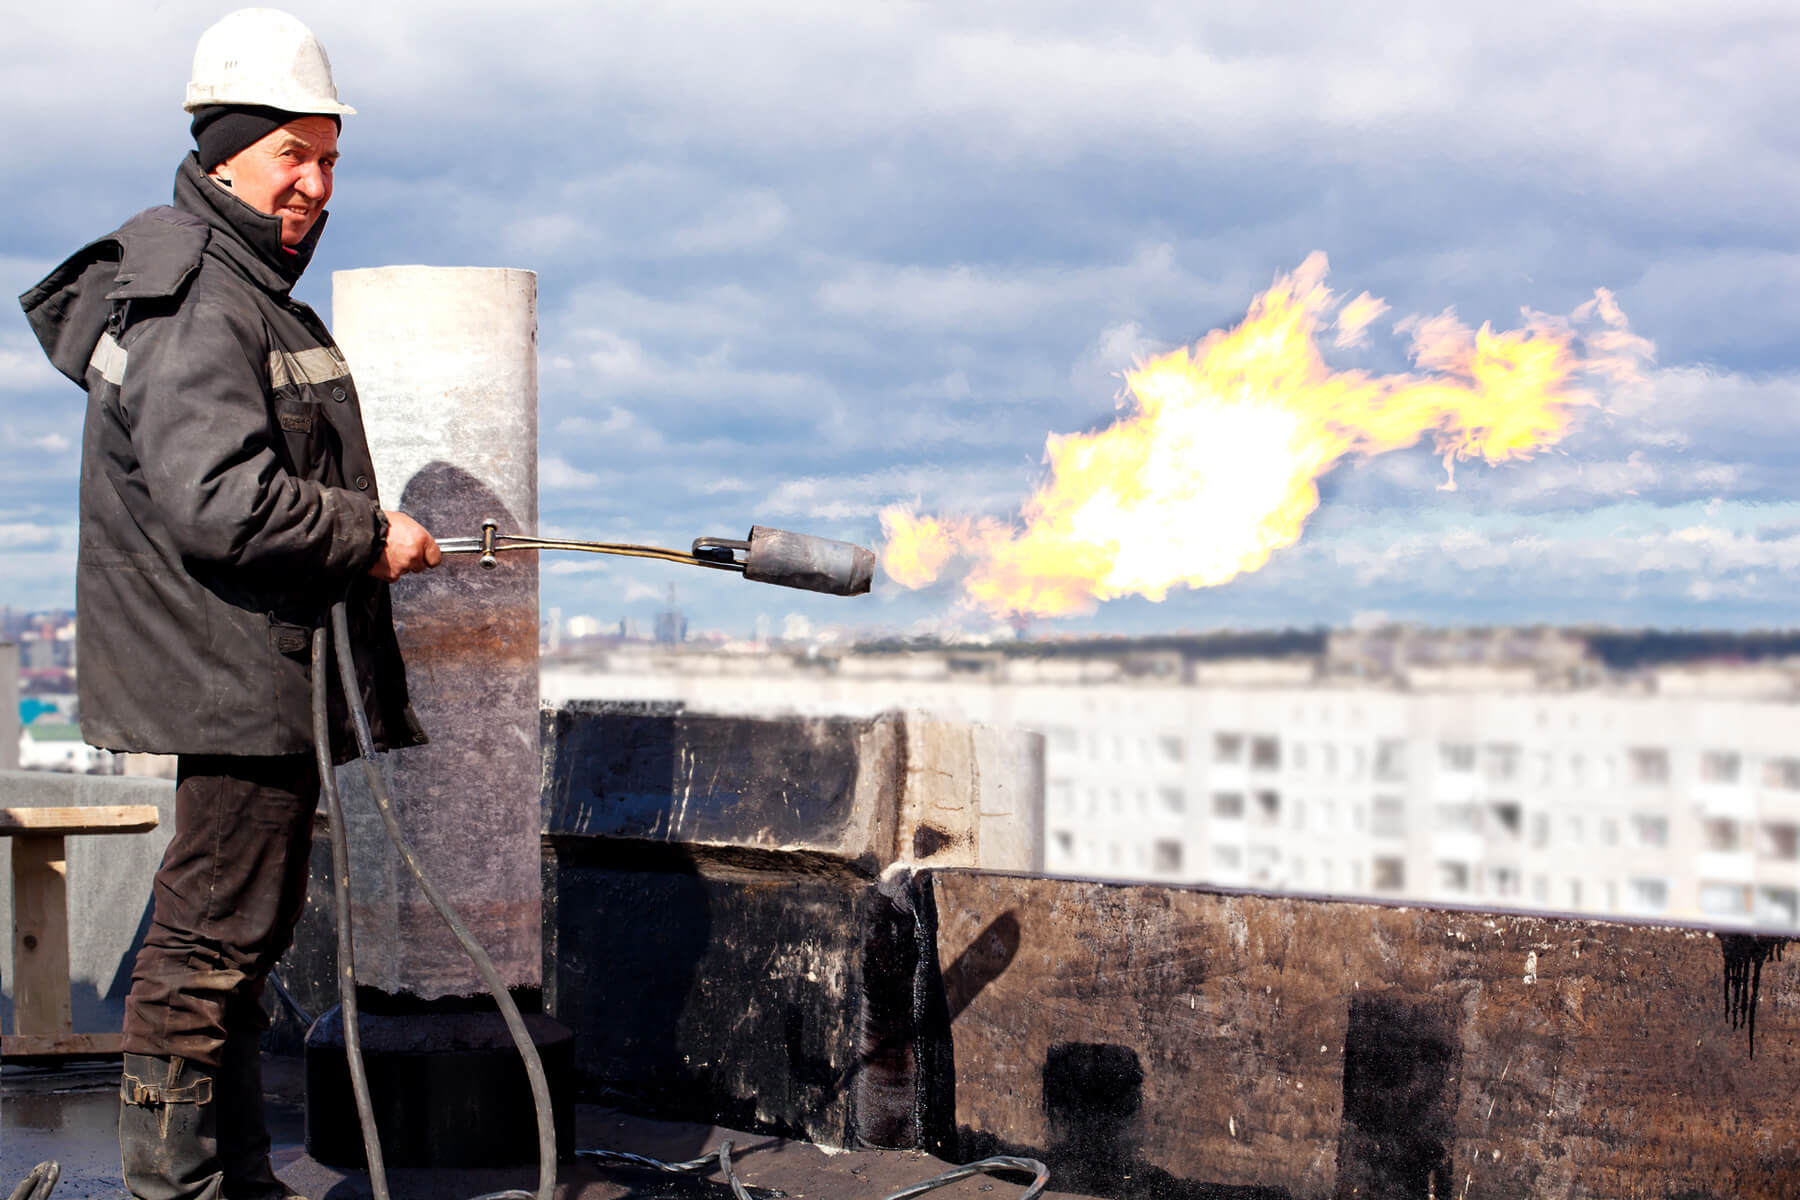 Eine Person mit Helm und Schutzkleidung hält einen Gasbrenner der gerade eine Flamme erzeugt und steht auf einem Hausdach.